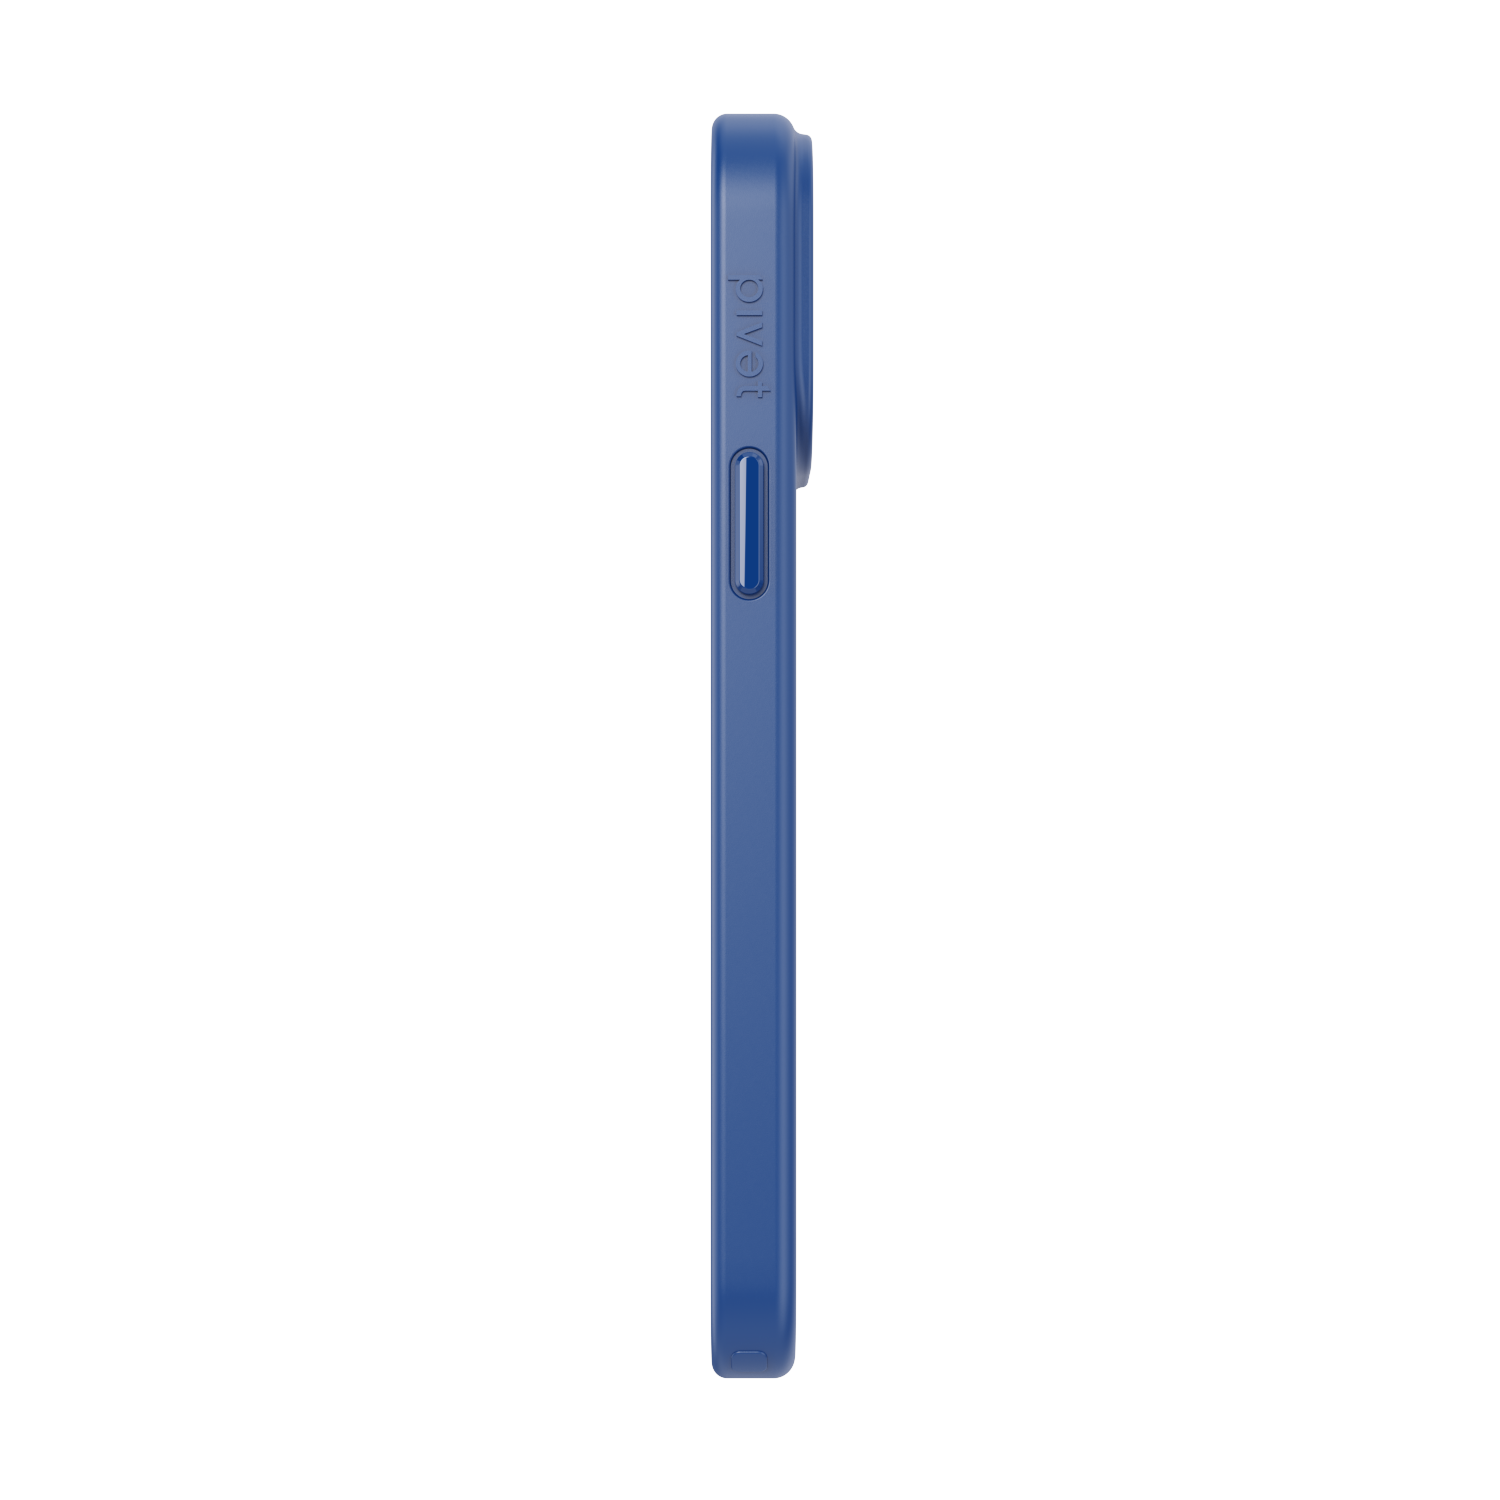 ZERO Ocean Blue for iPhone 13 Pro Max